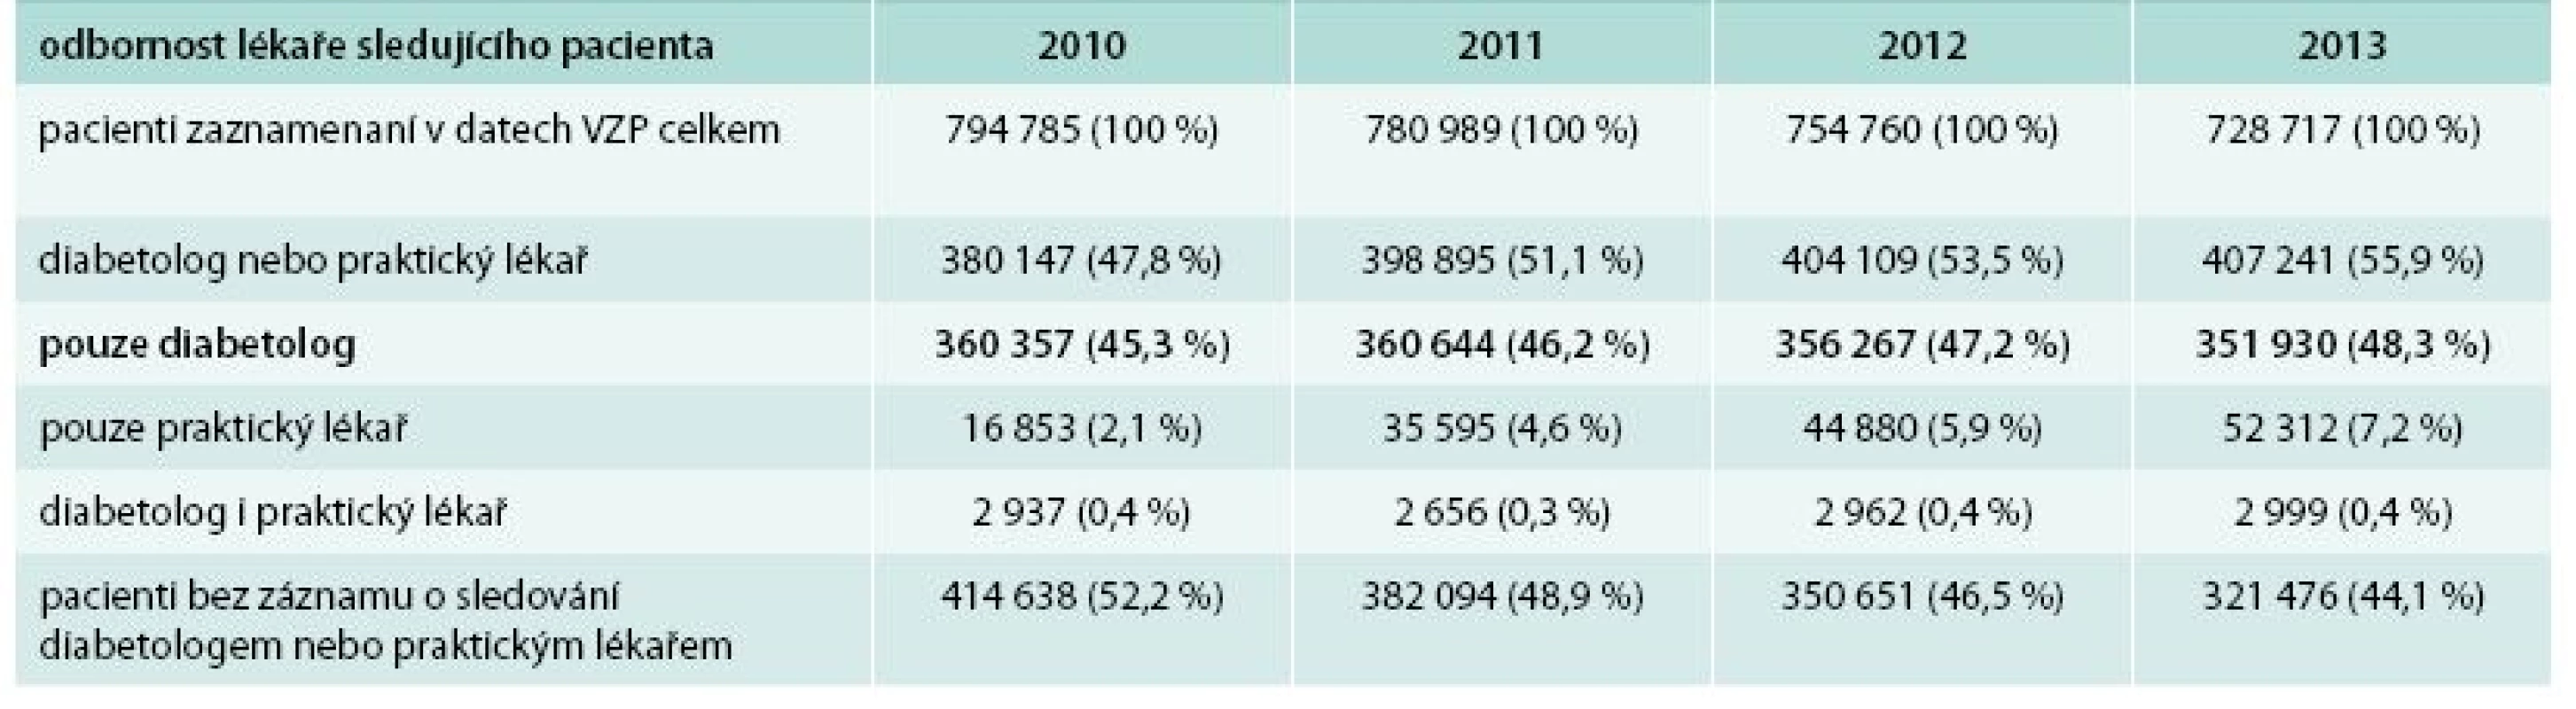 Celkový přehled pacientů v datech VZP v letech 2010–2013. Počty pacientů v datech VZP dle sledování u lékaře dané odbornosti v jednotlivých letech v období 2010–2013